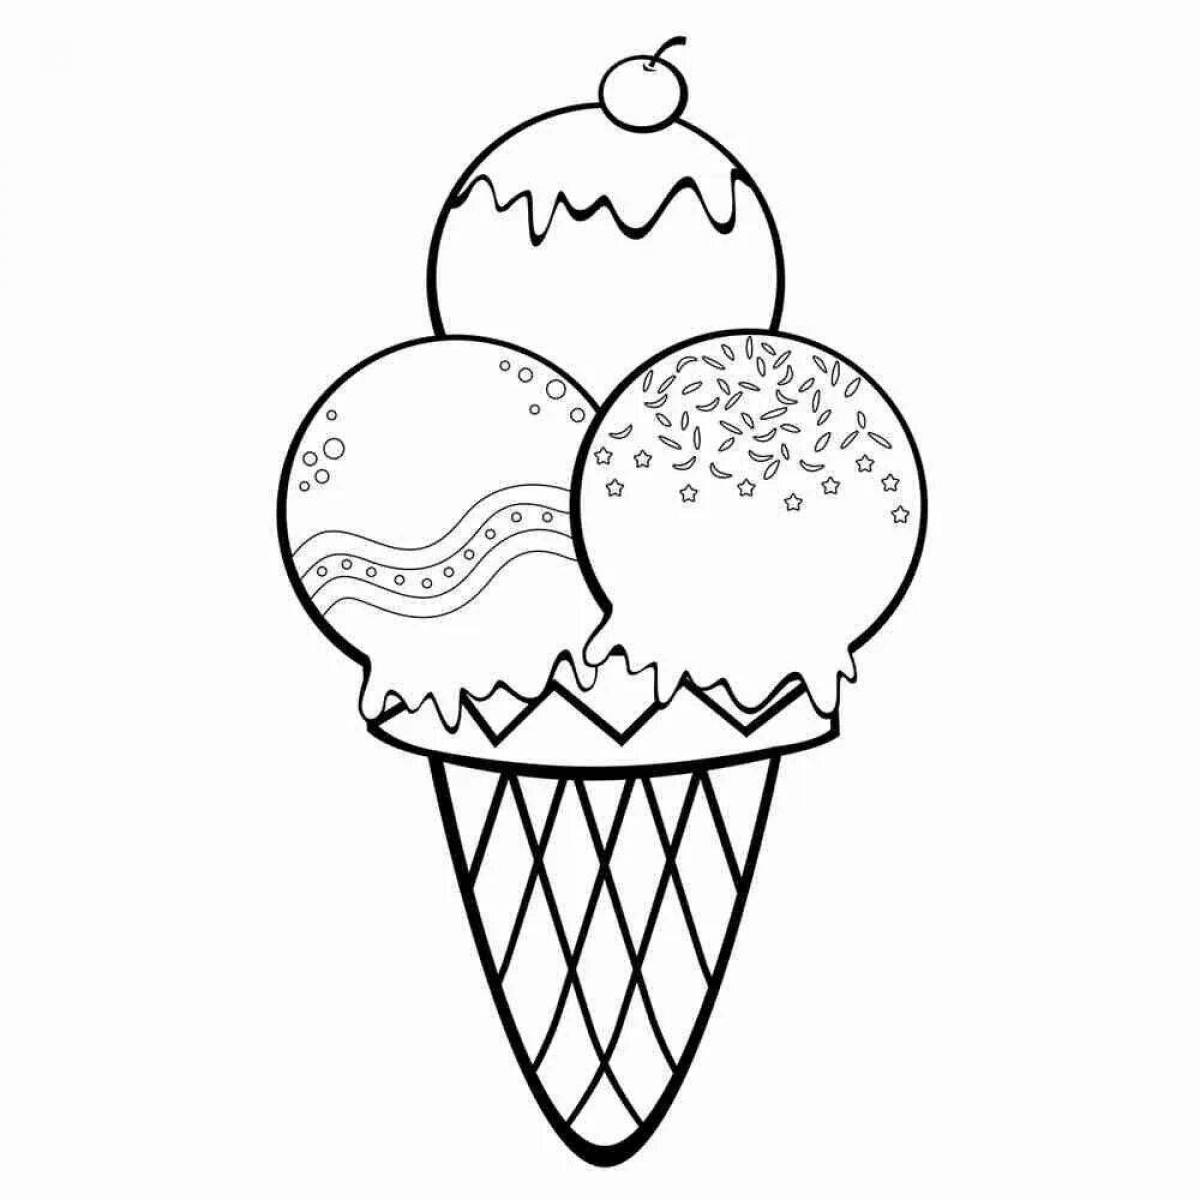 Pre-k ice cream fun coloring book